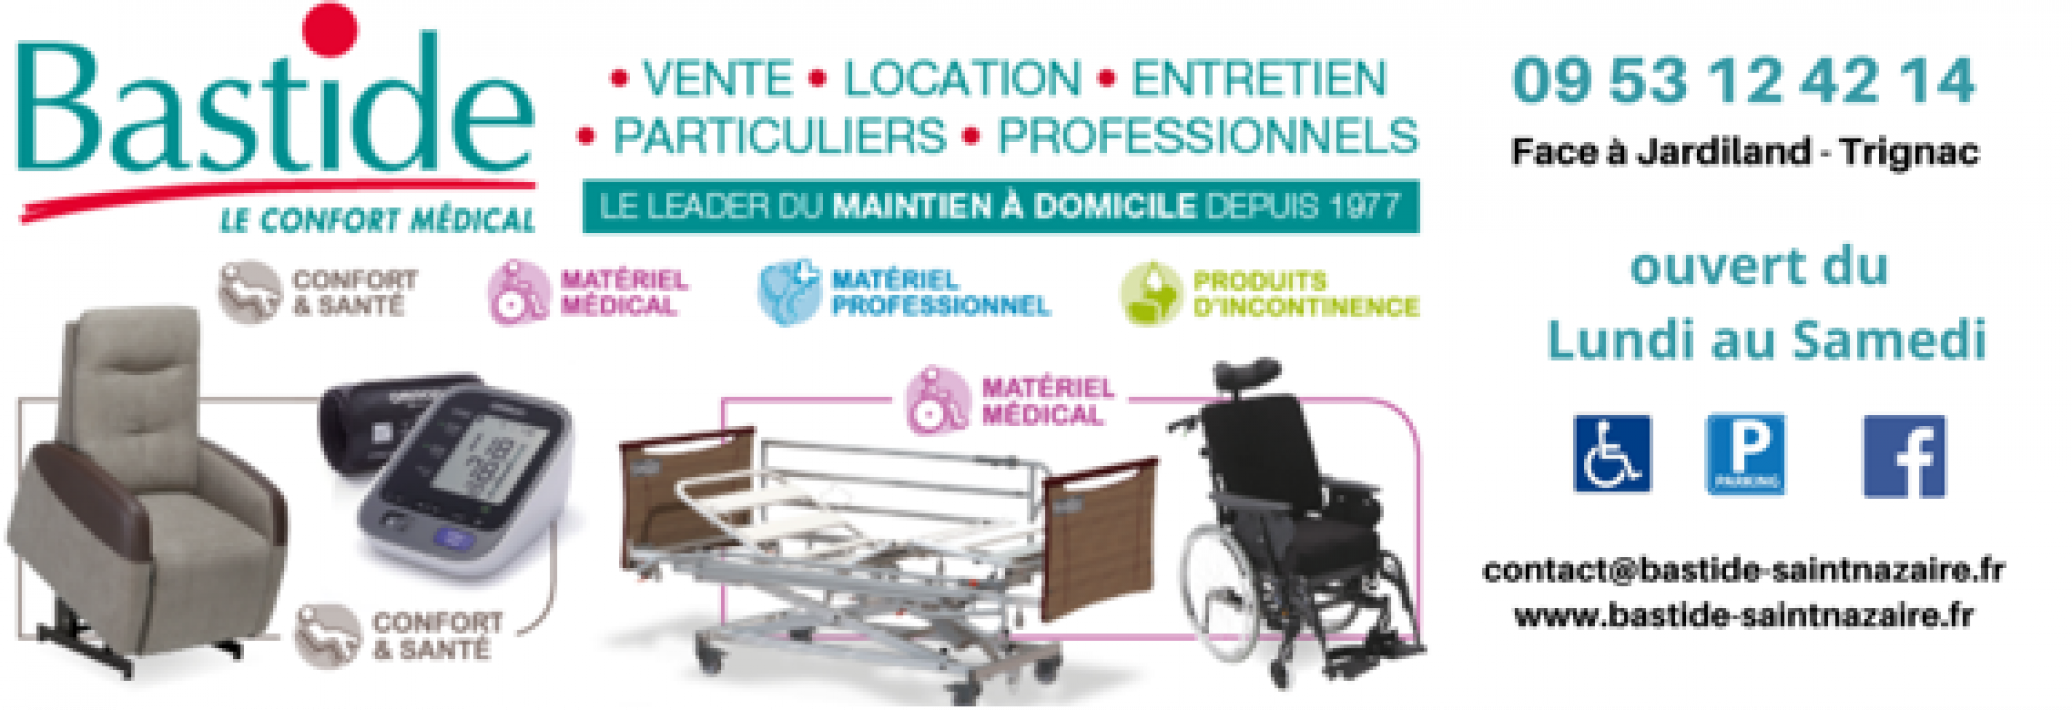 bastide-le-confort-medical-3489824